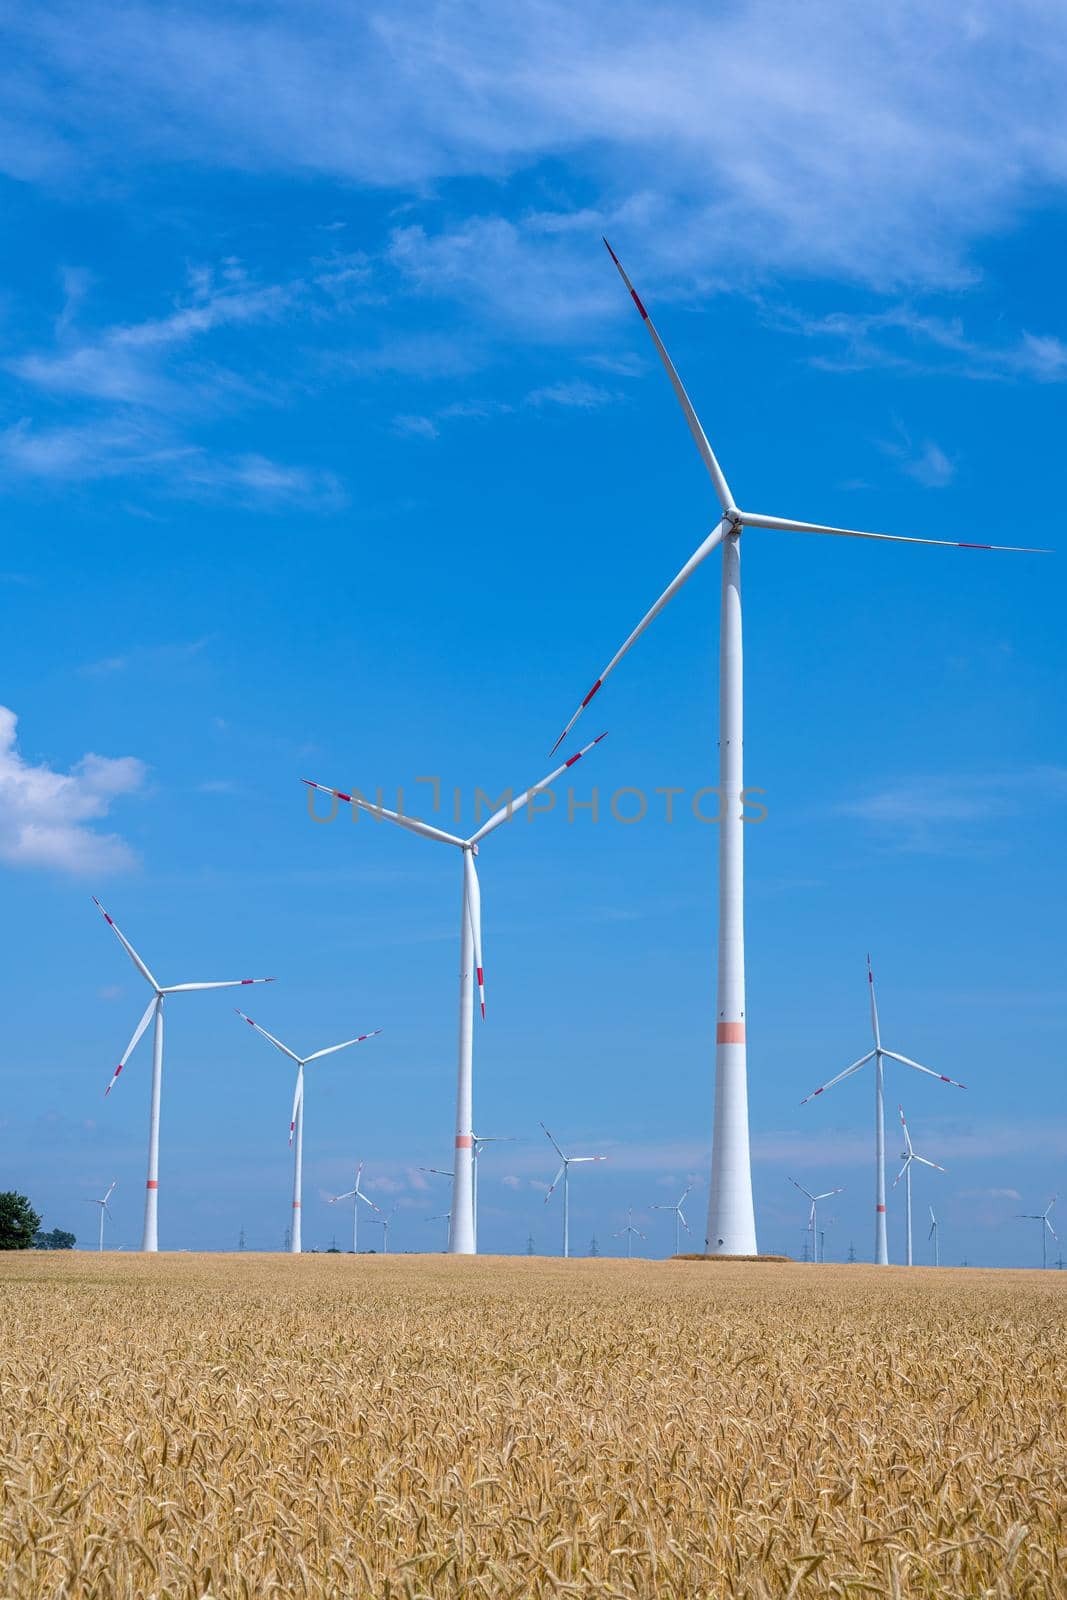 Wind energy plants in a grainfield seen in Germany